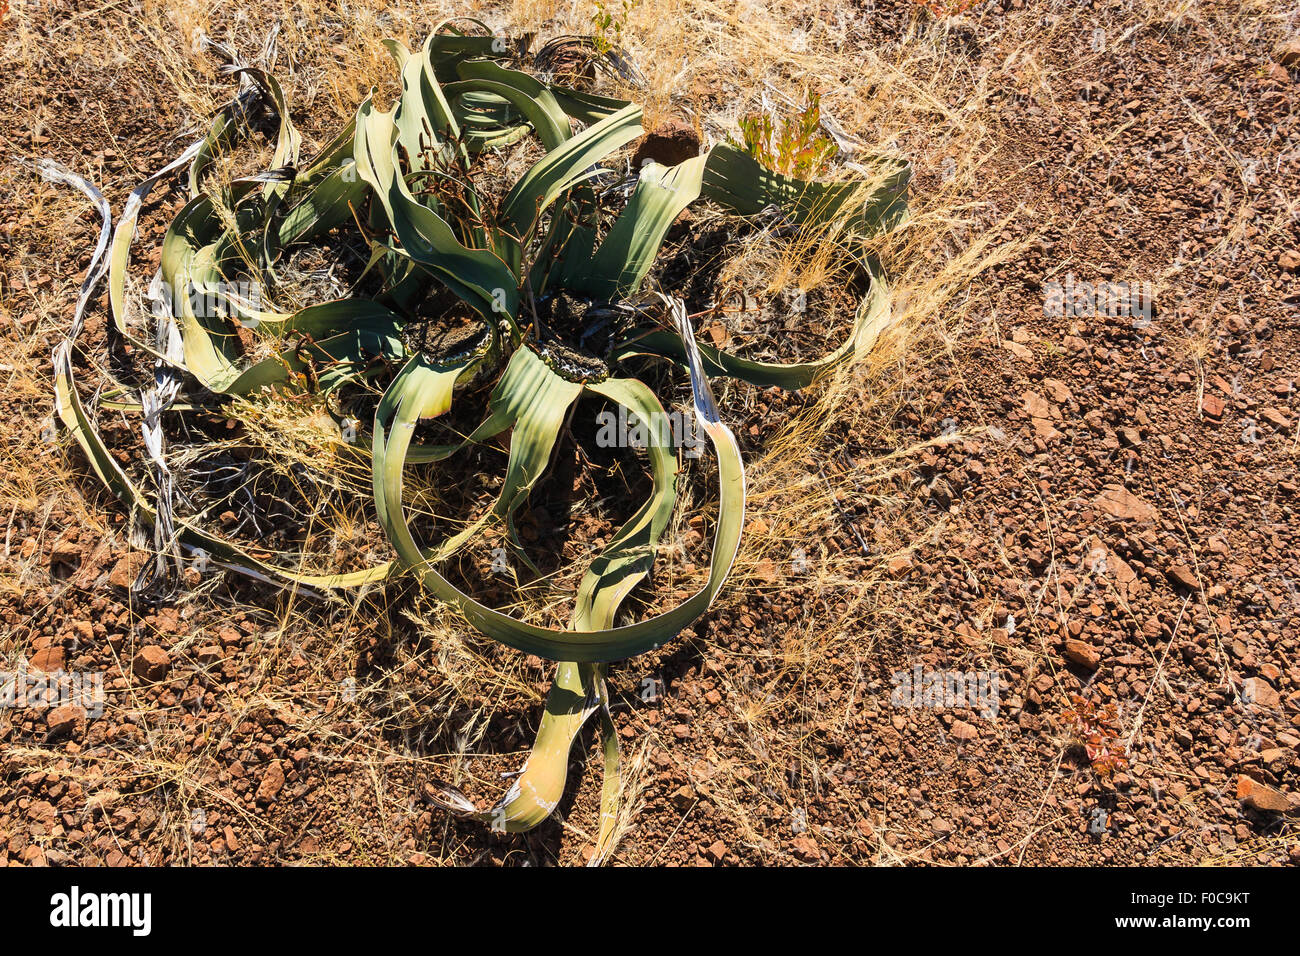 Ancien en Afrique Namibie désert welwitschia. Végétaux anciens spécial avec système racinaire superficiel. Banque D'Images